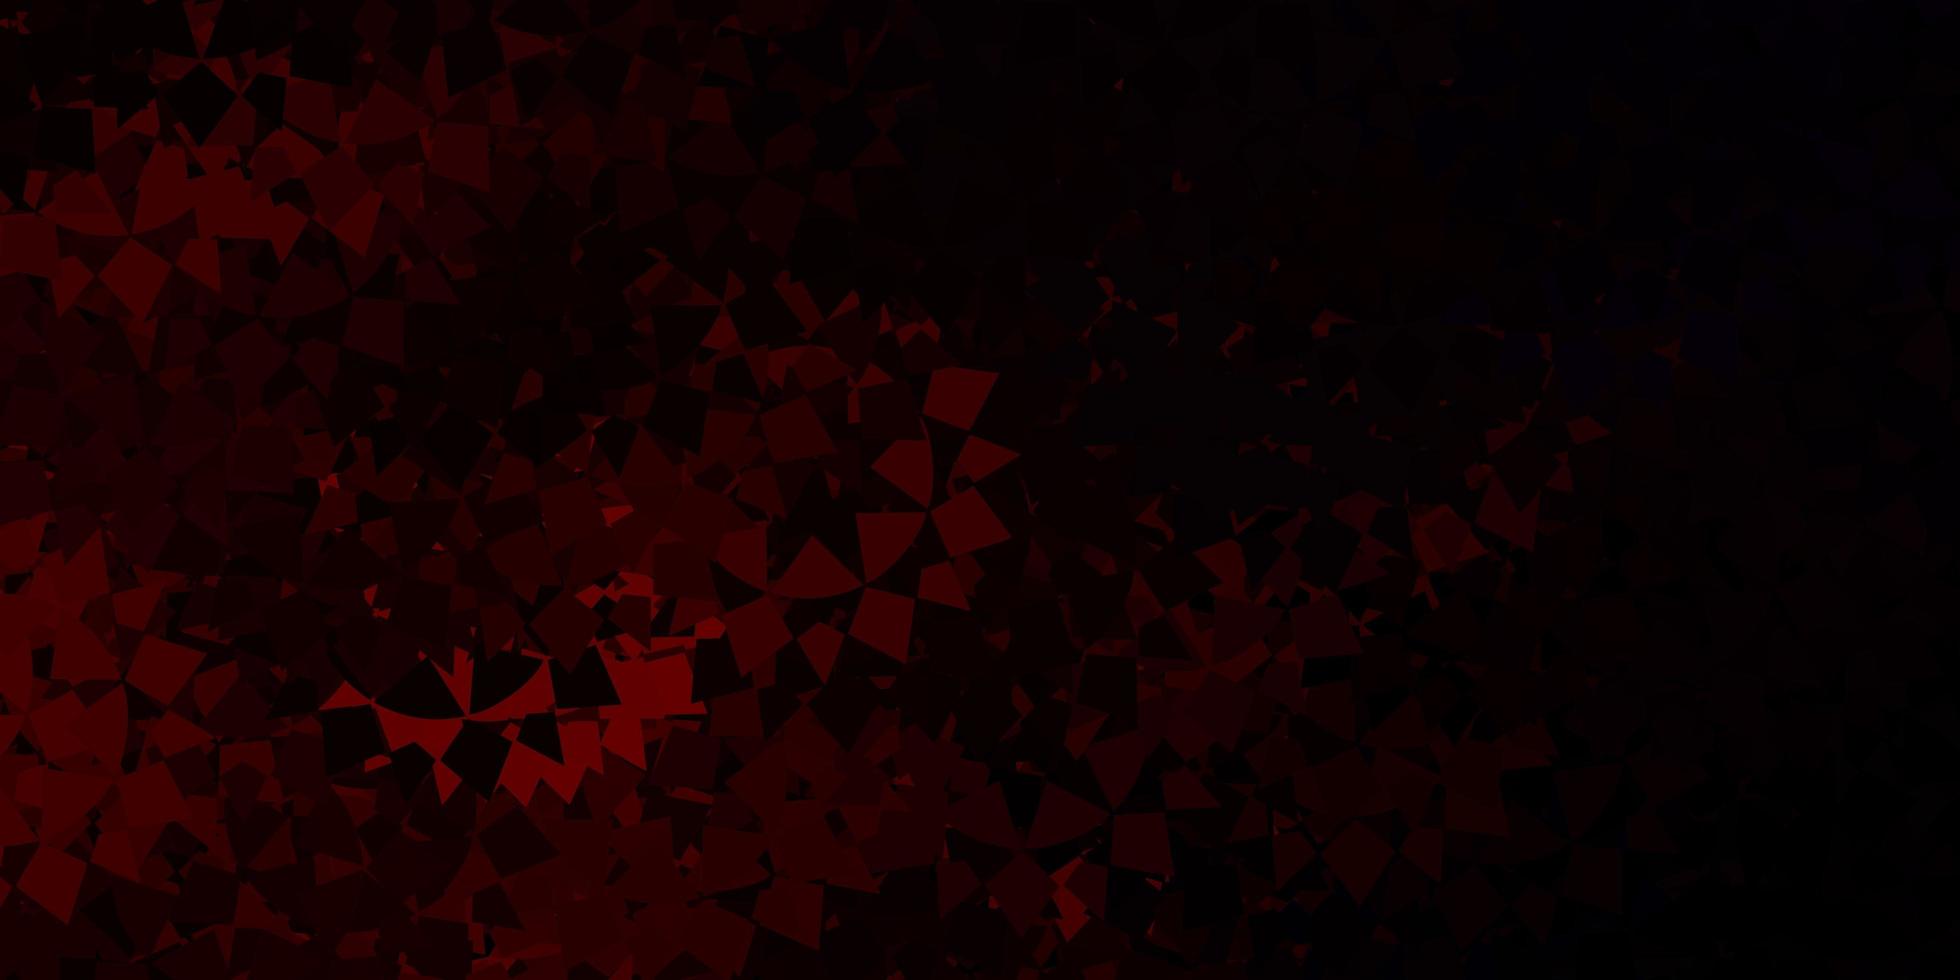 patrón de vector rojo oscuro con formas poligonales.